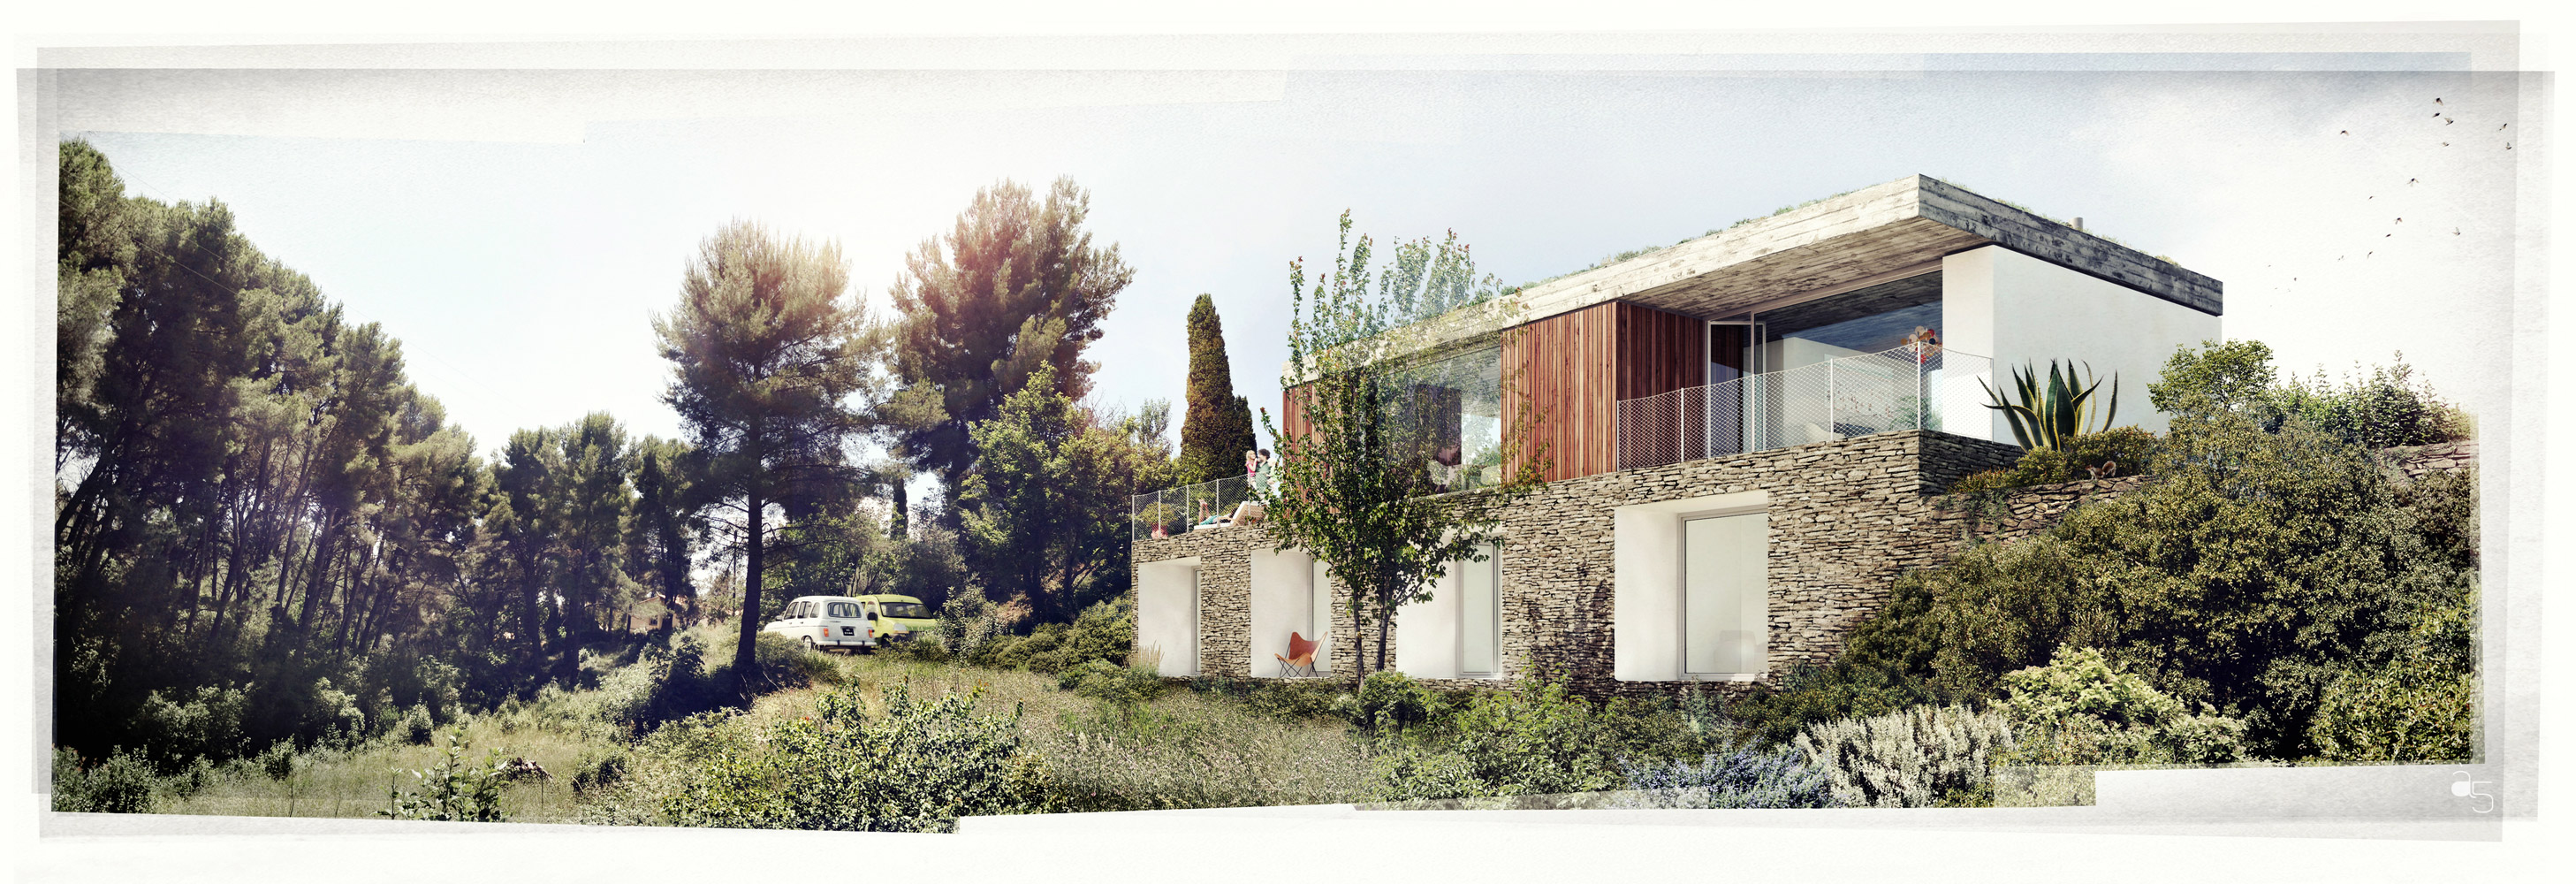 Maison 4, Saint Cyr - Visuel 3-m3a architectes-3dvisualization-cgi-archiviz-cgarchitect-architecture-renderviz-image de synthèse-architecture